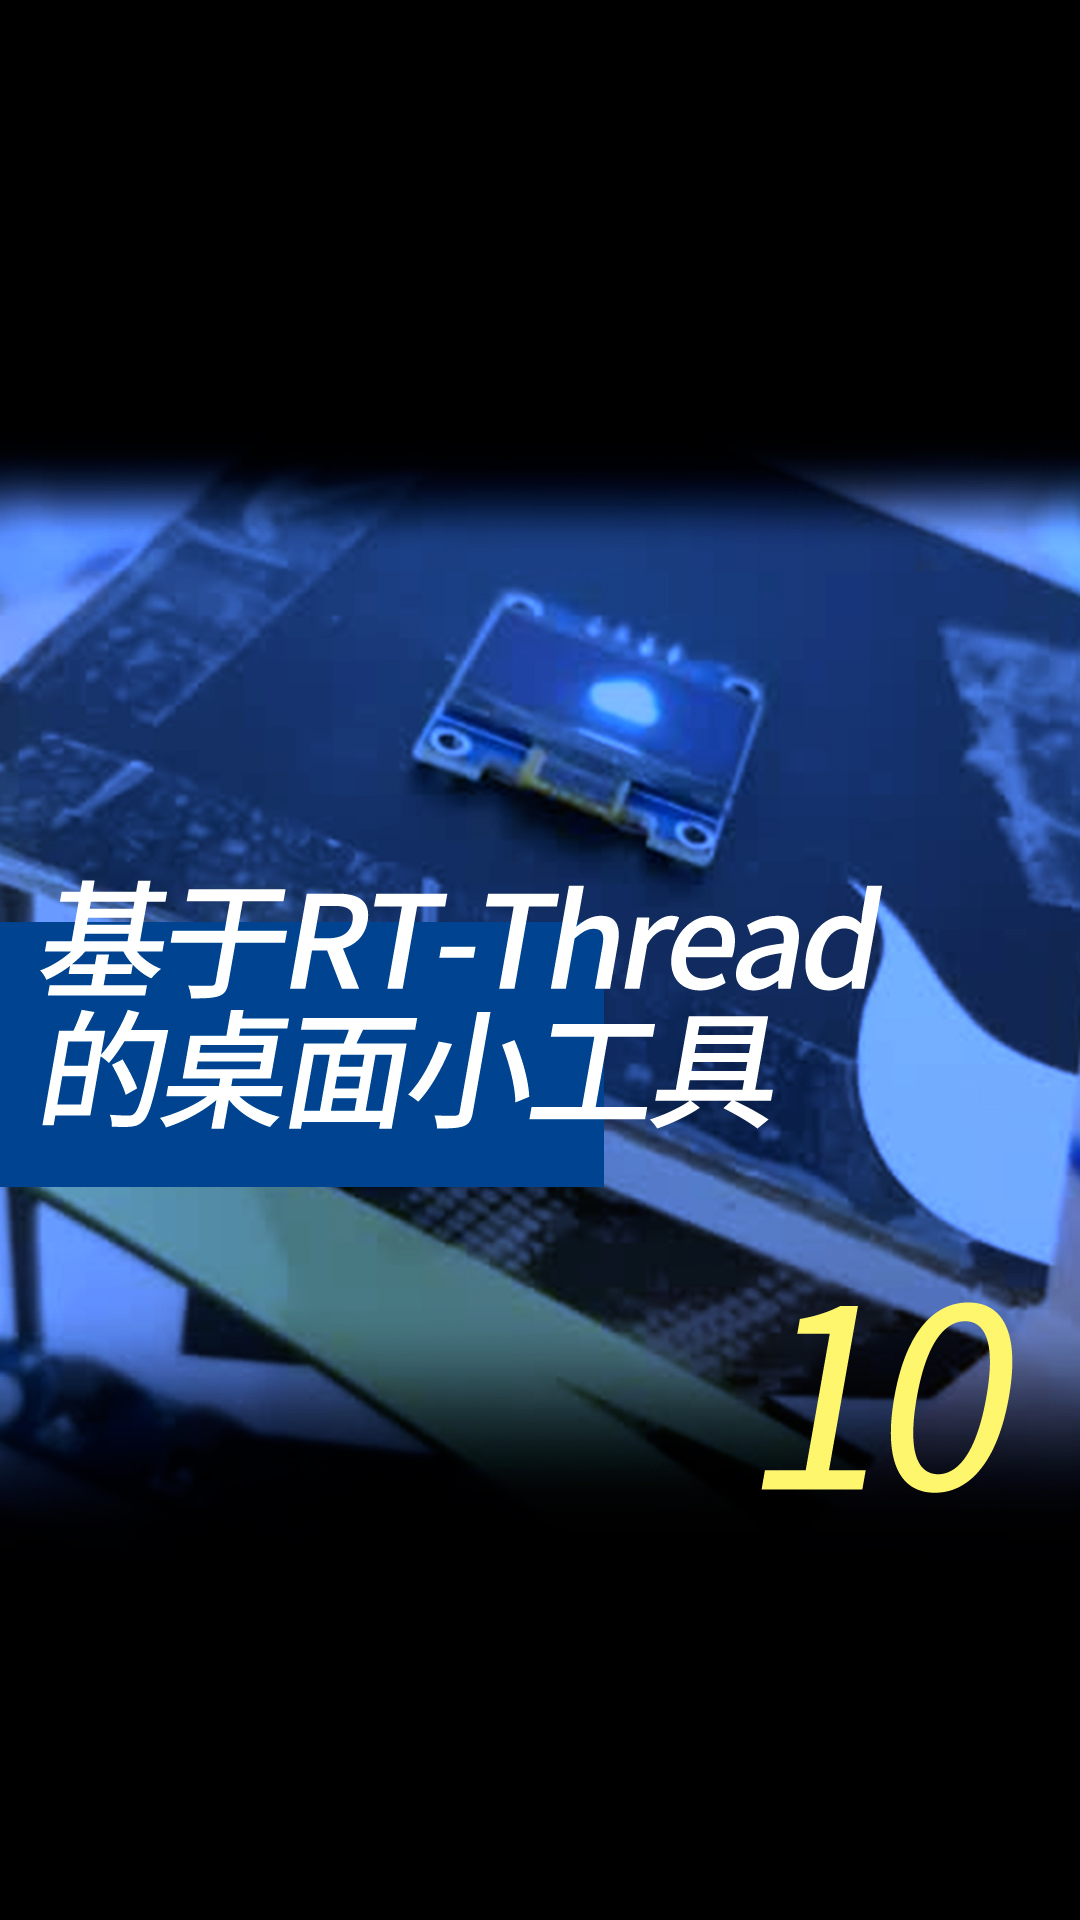 基于RT-Thread的桌面小工具 - 10-3-5获取知心天气信息